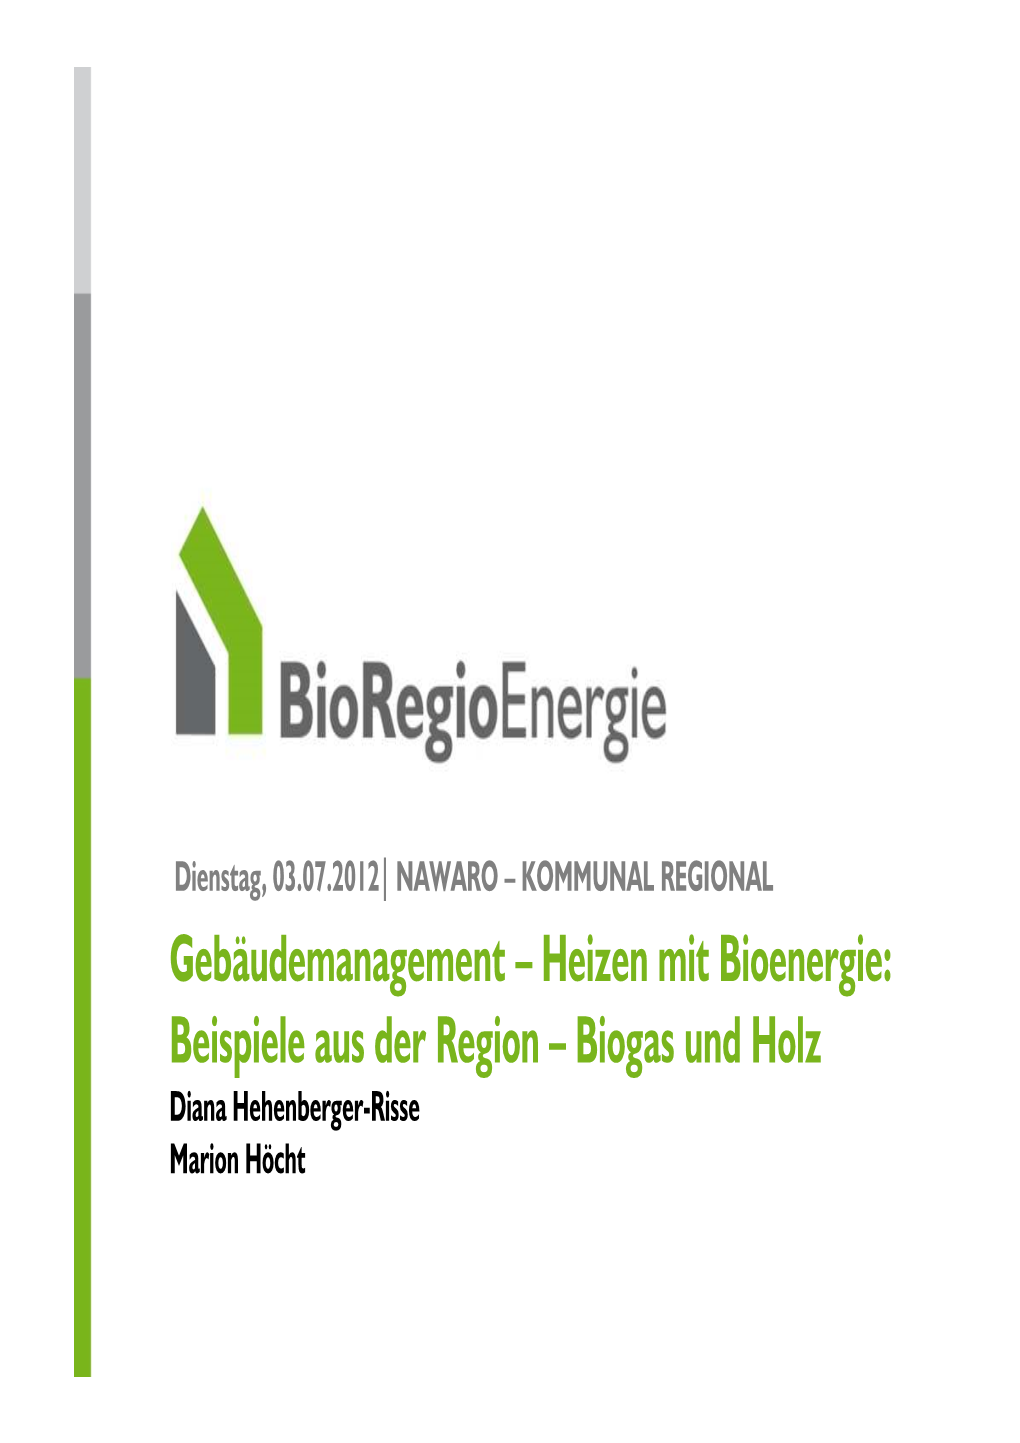 Biogas Und Holz Diana Hehenberger-Risse Marion Höcht Die Bioregio Energie Gmbh